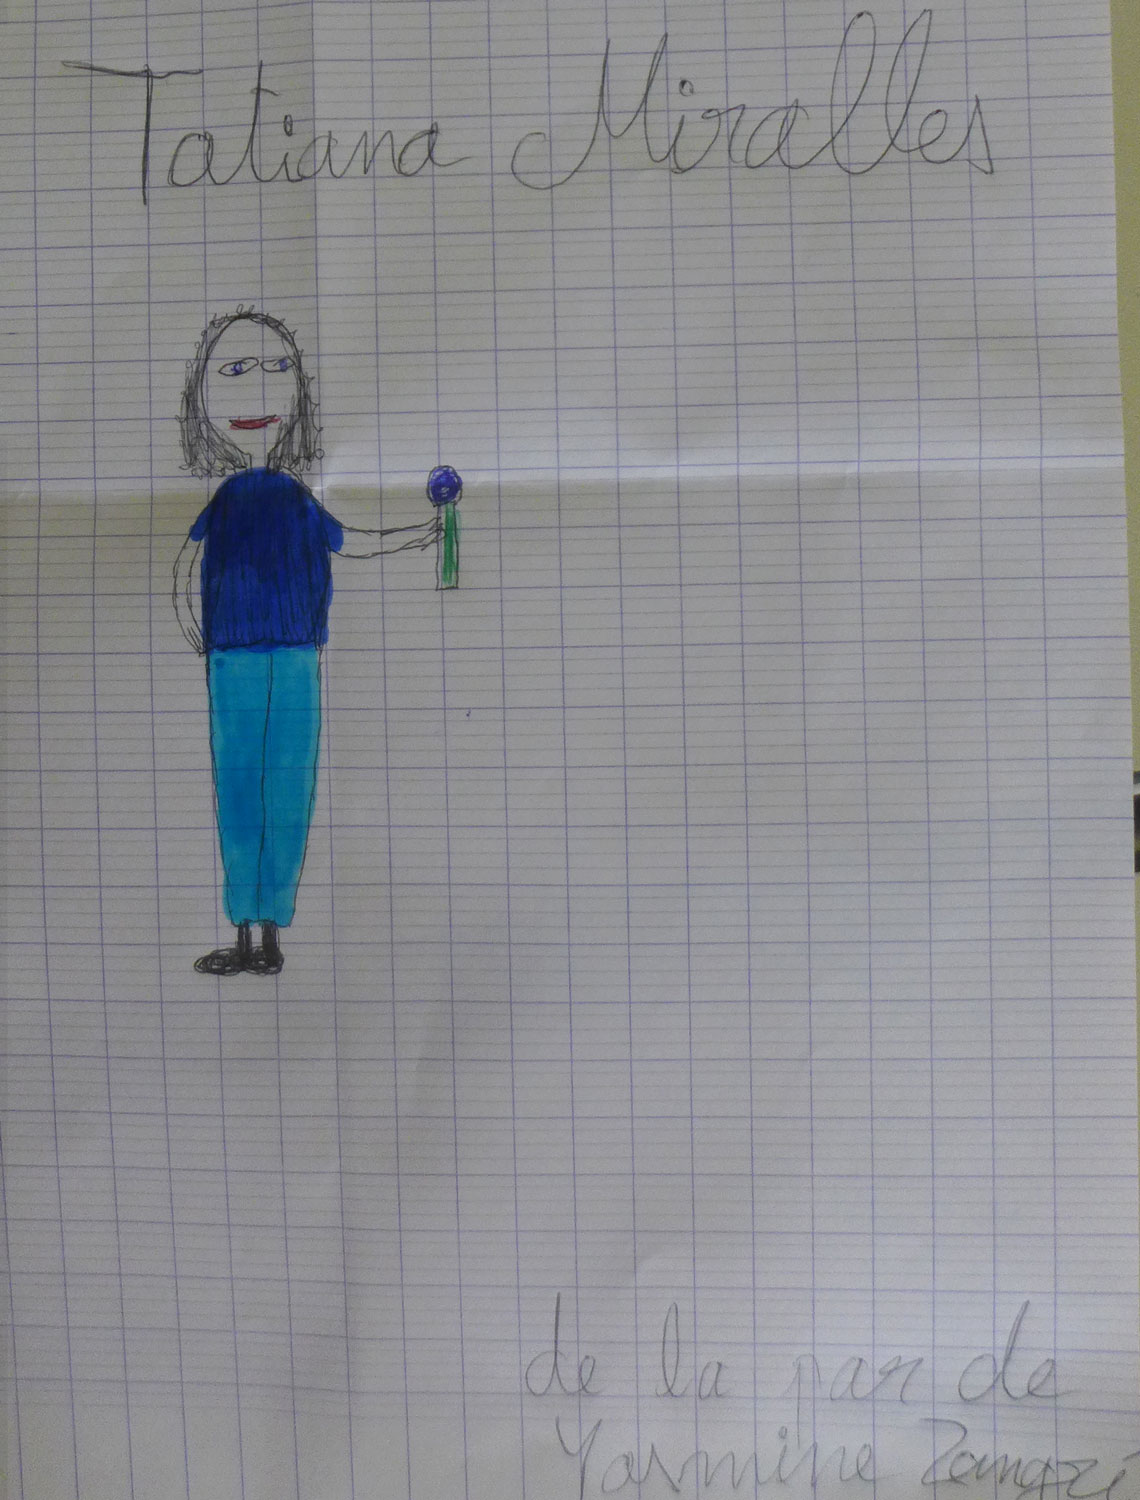 À la fin des enregistrements, une élève donne ce portrait à l’envoyée spéciale pour la remercier de sa visite.